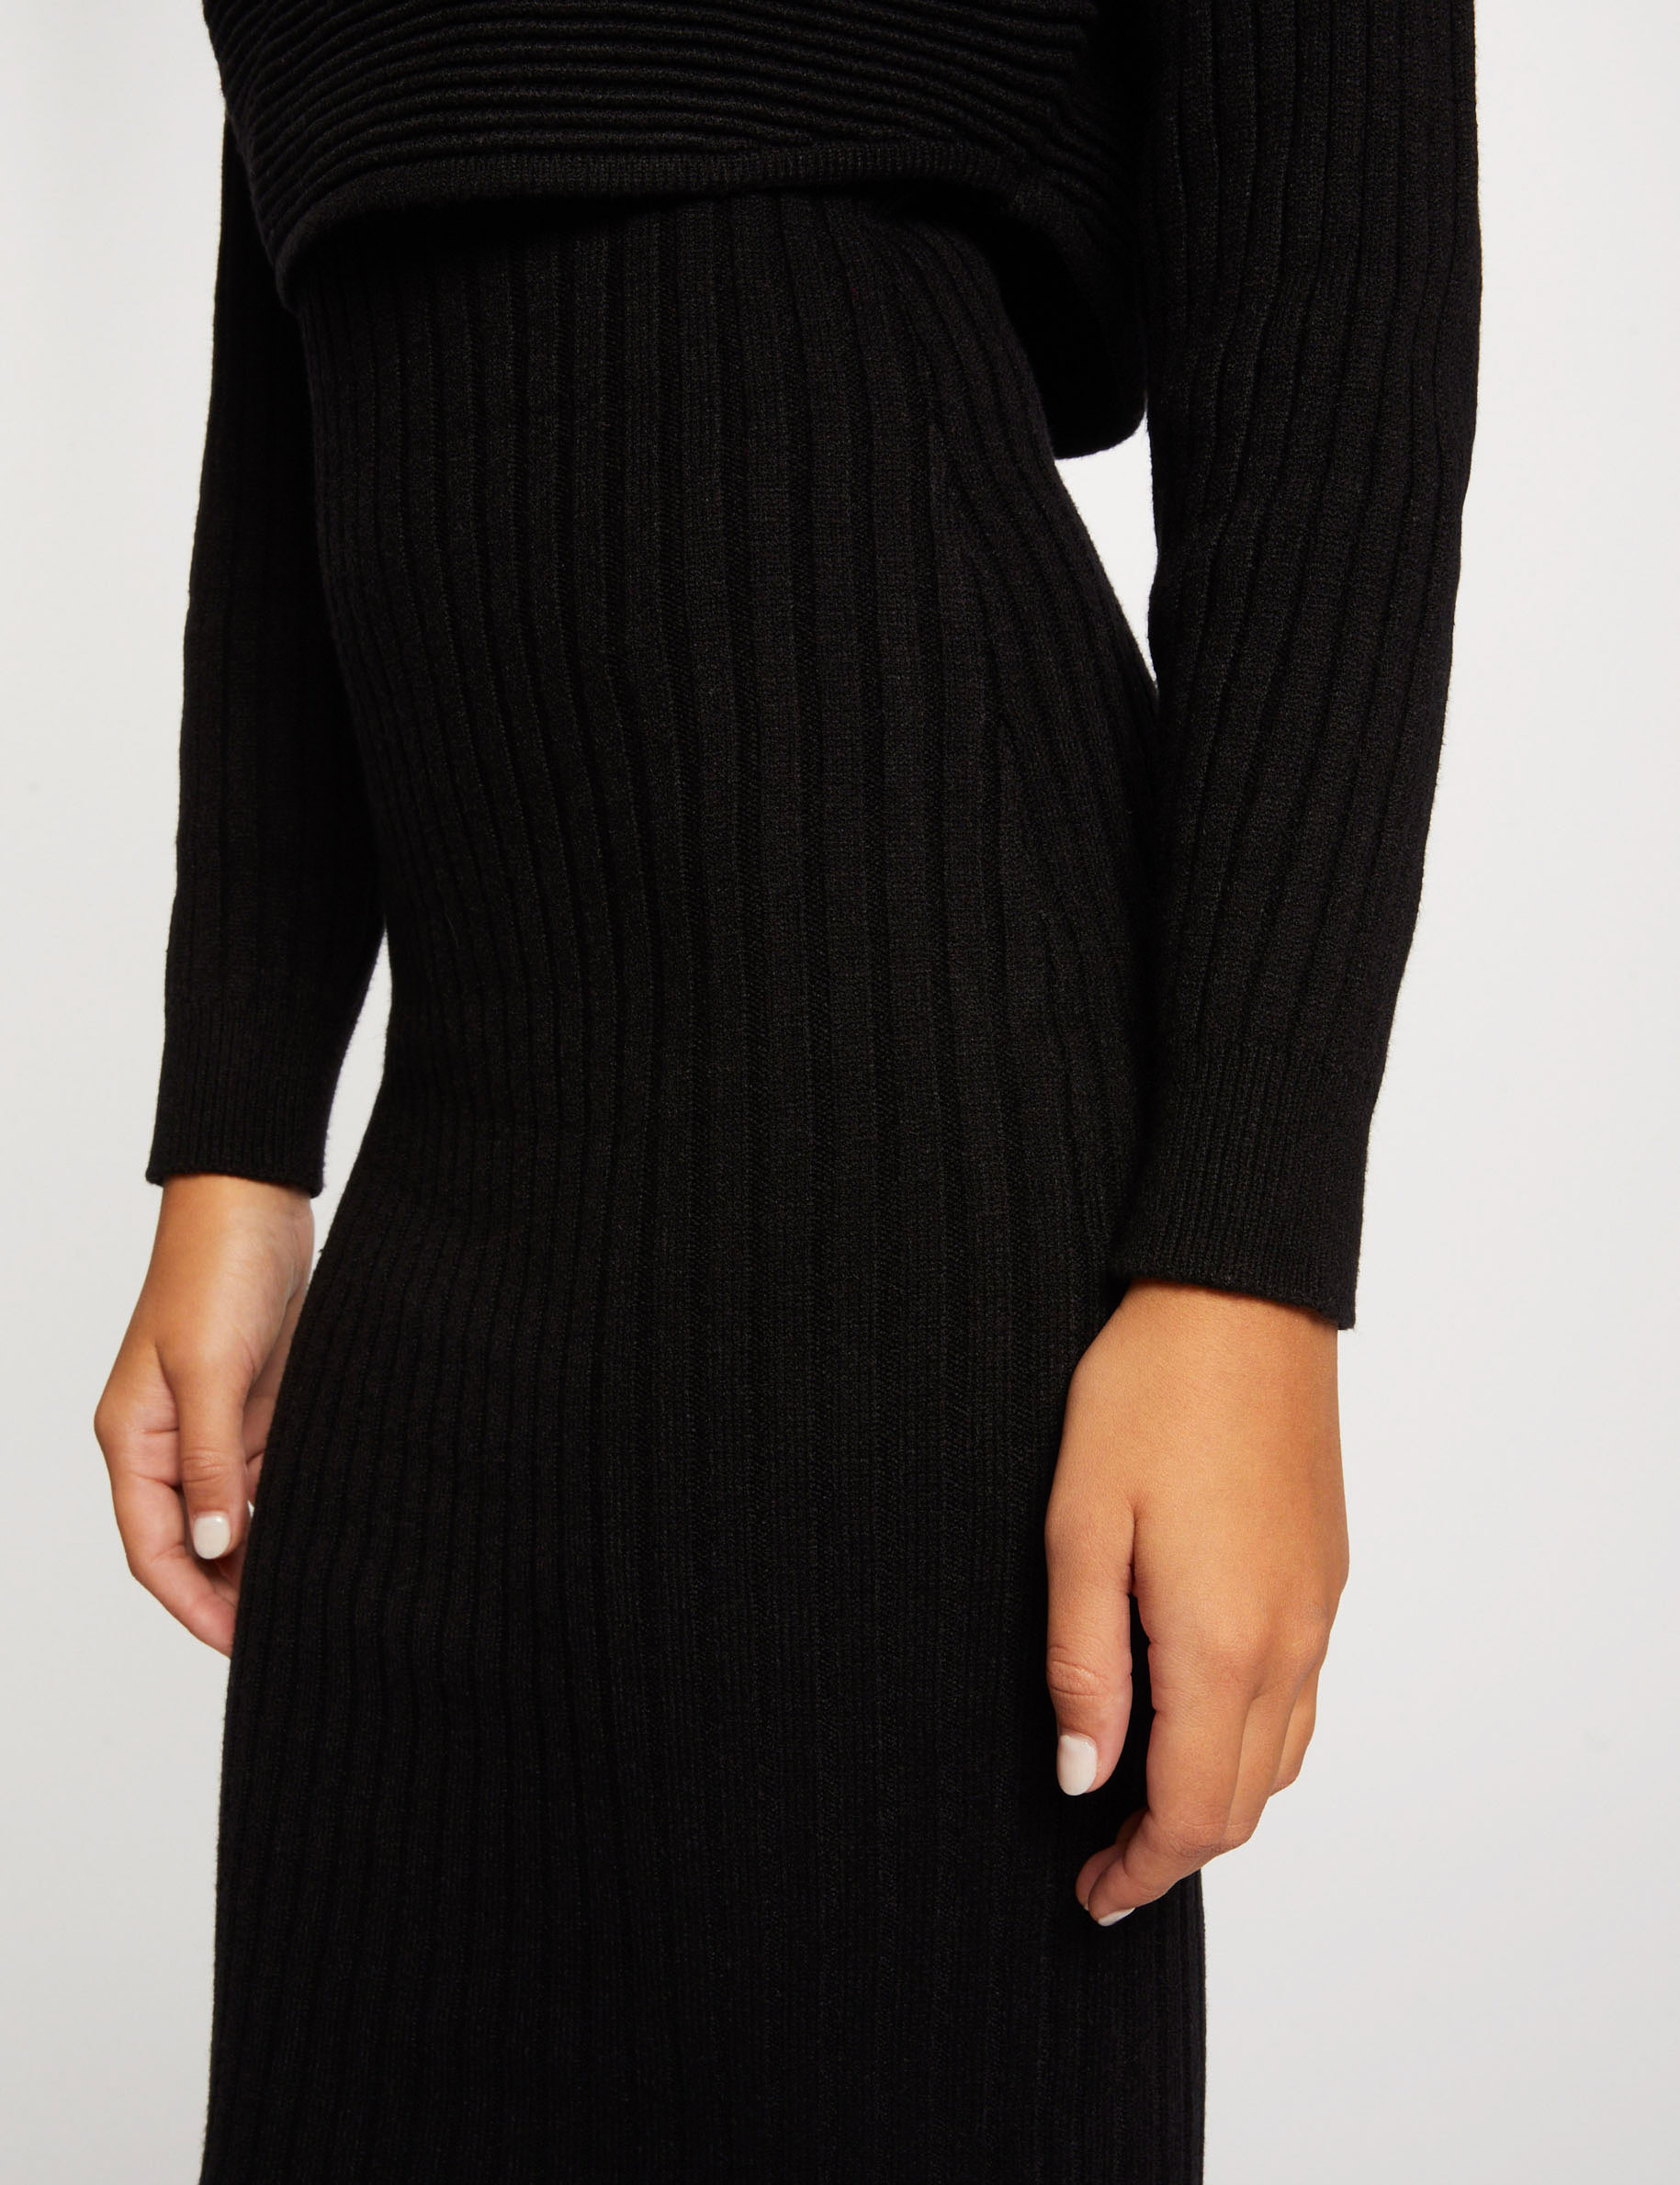 Midi-trui jurk met 2-in-1 effect zwart vrouw